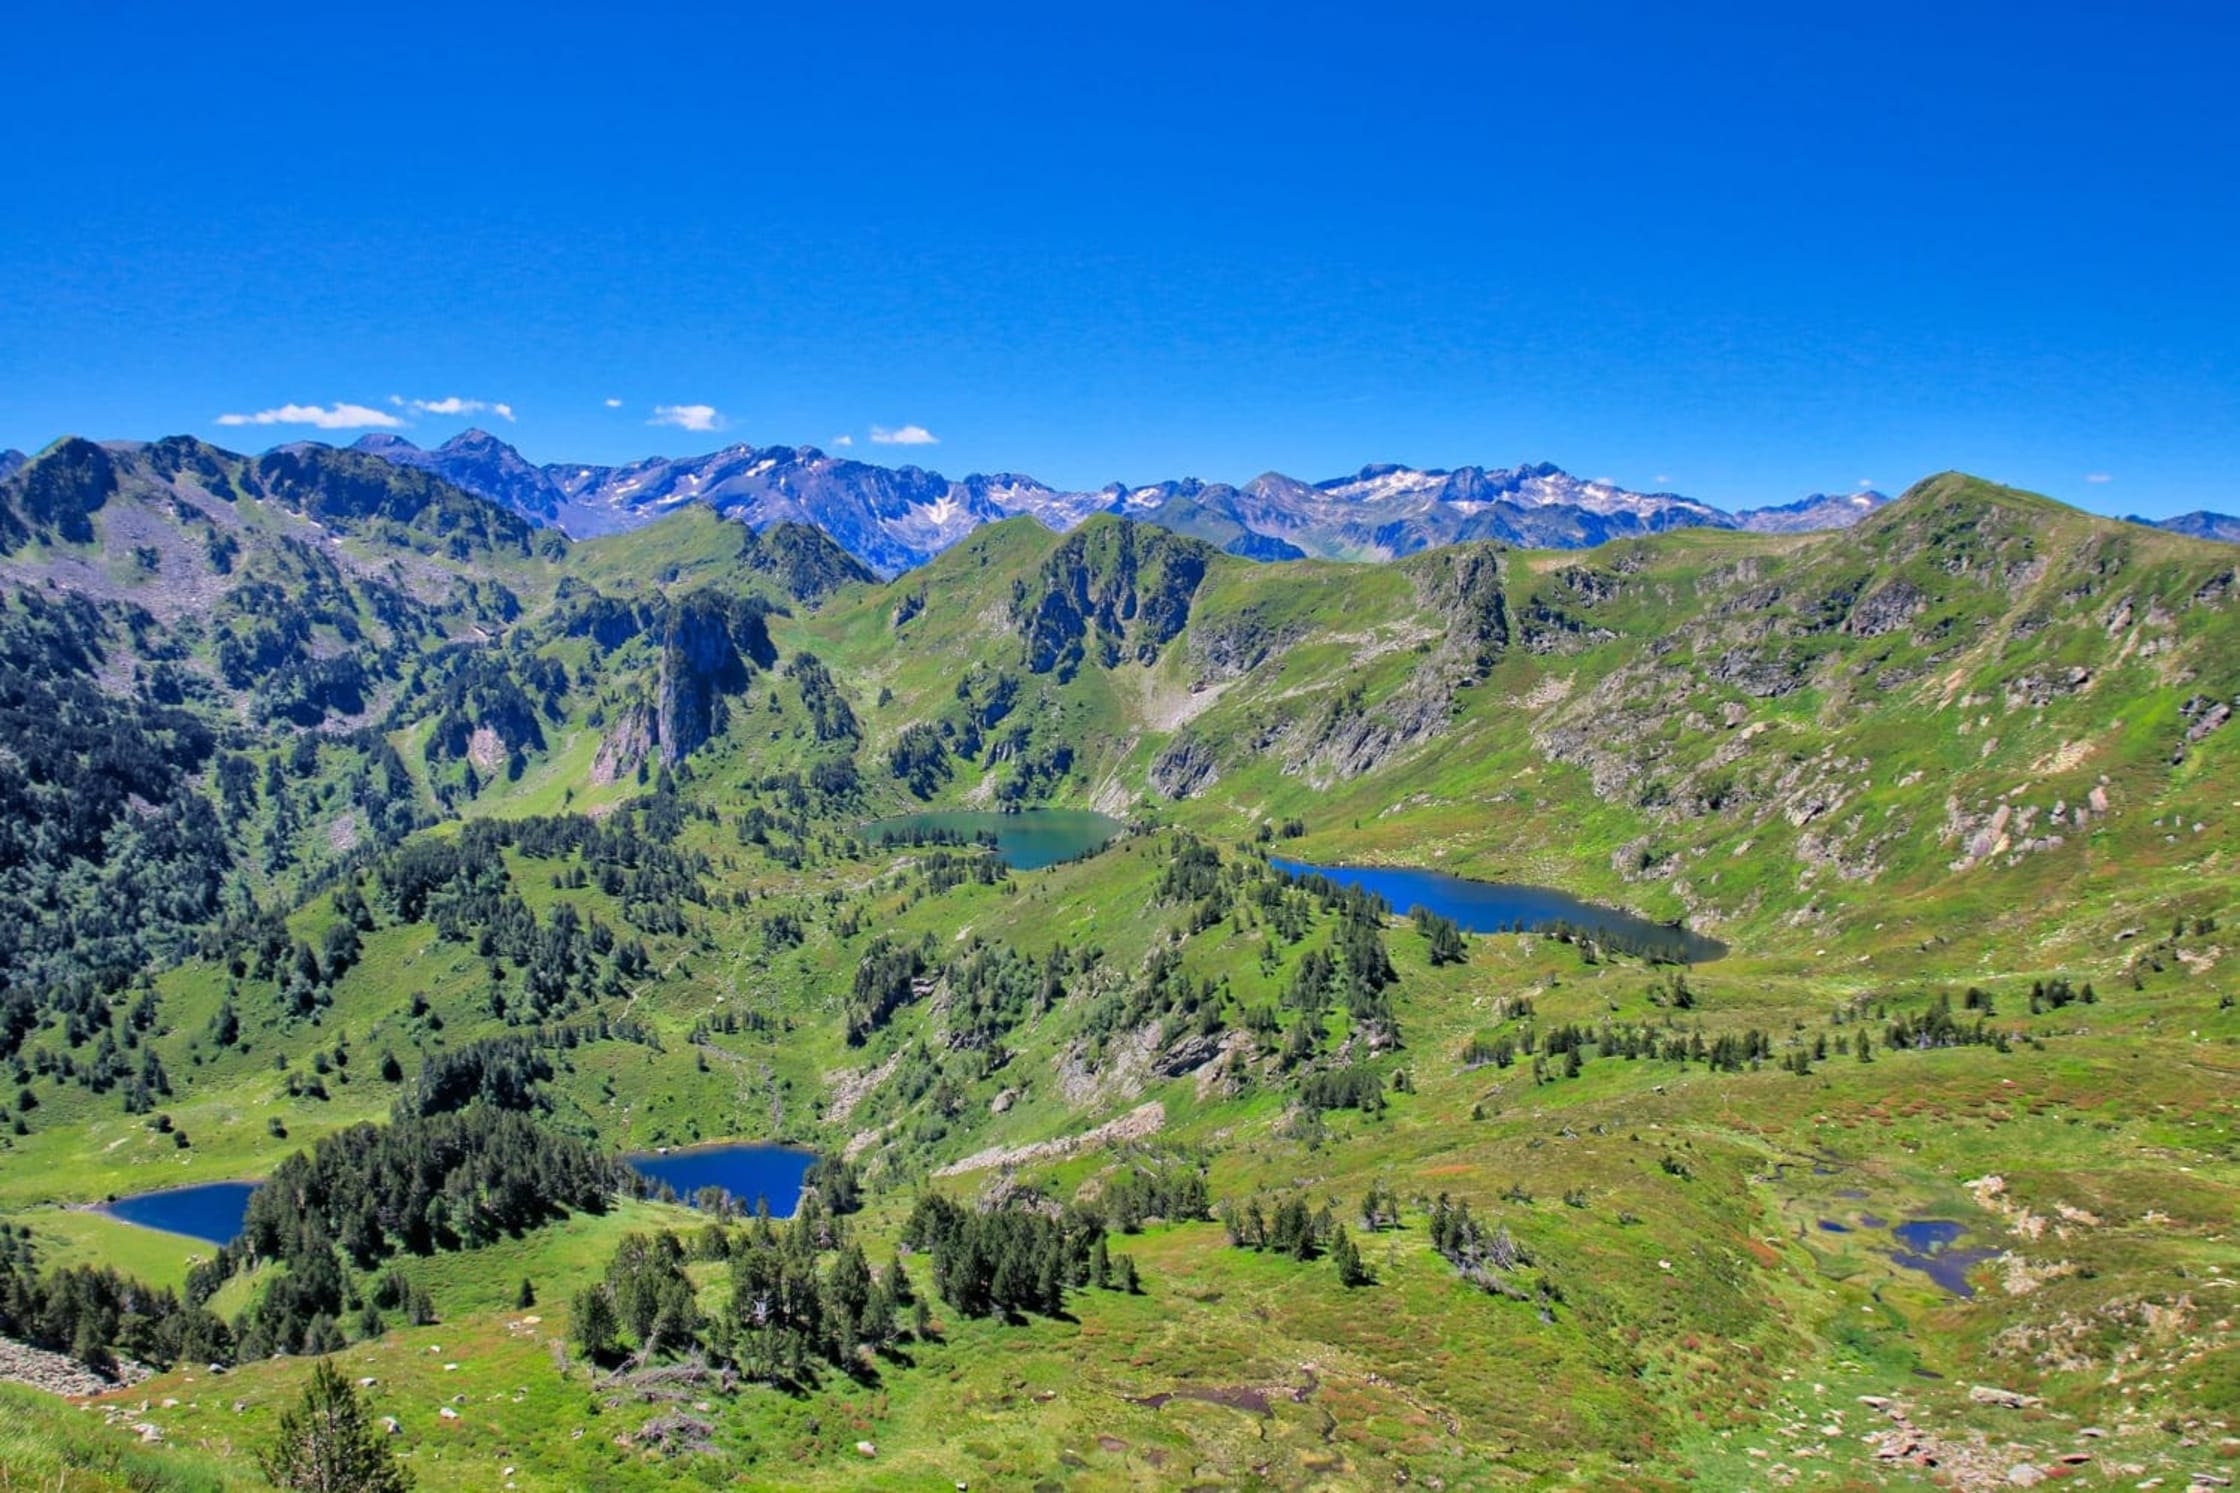 Randonnée étangs de Rabassoles : vue aérienne sur trois lacs entourés de montagnes verdoyantes